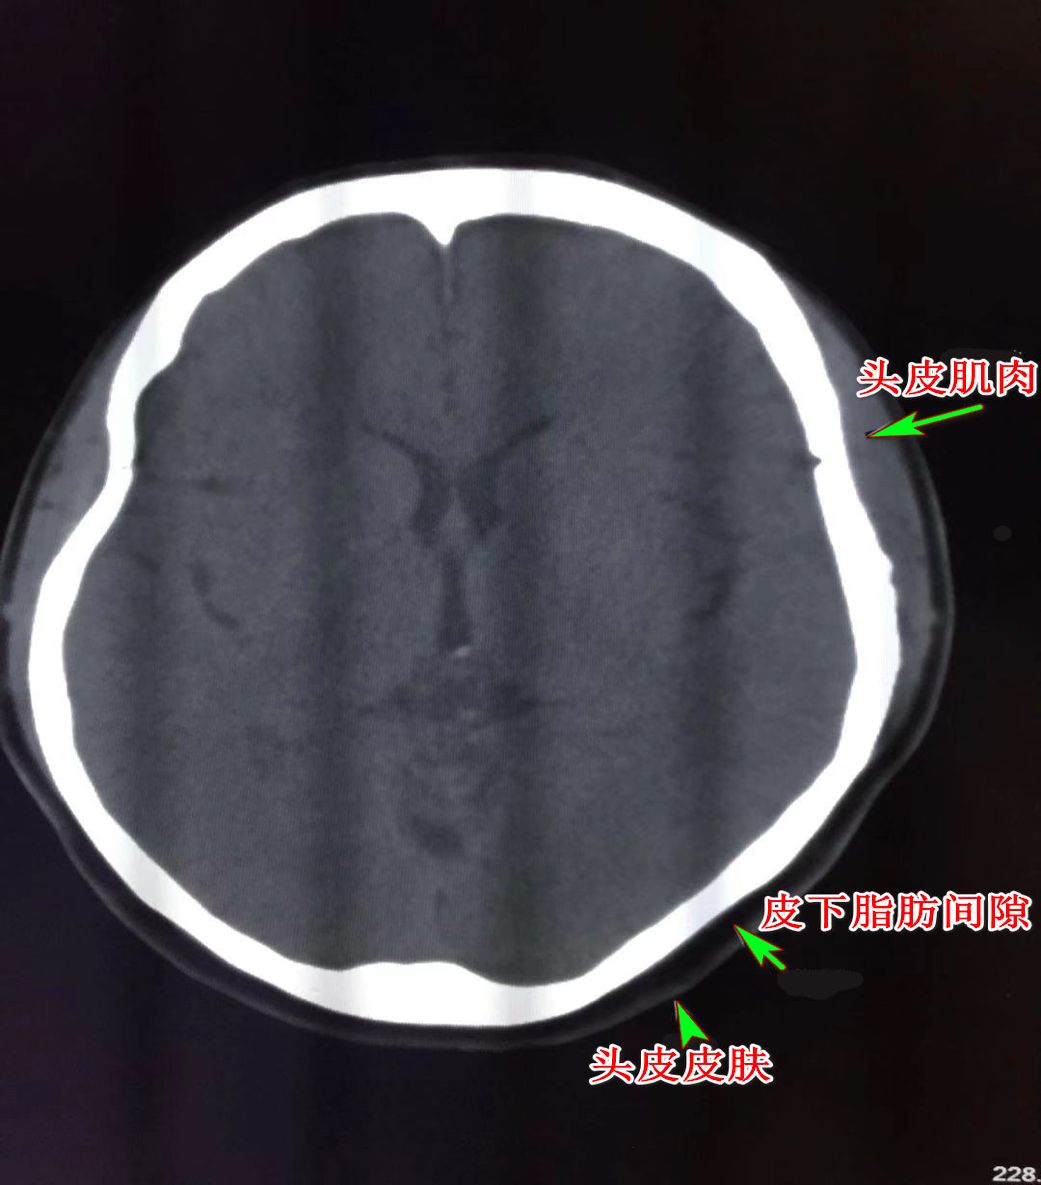 颅脑 CT 读片 纯干货 - 影像核医学 -丁香园论坛